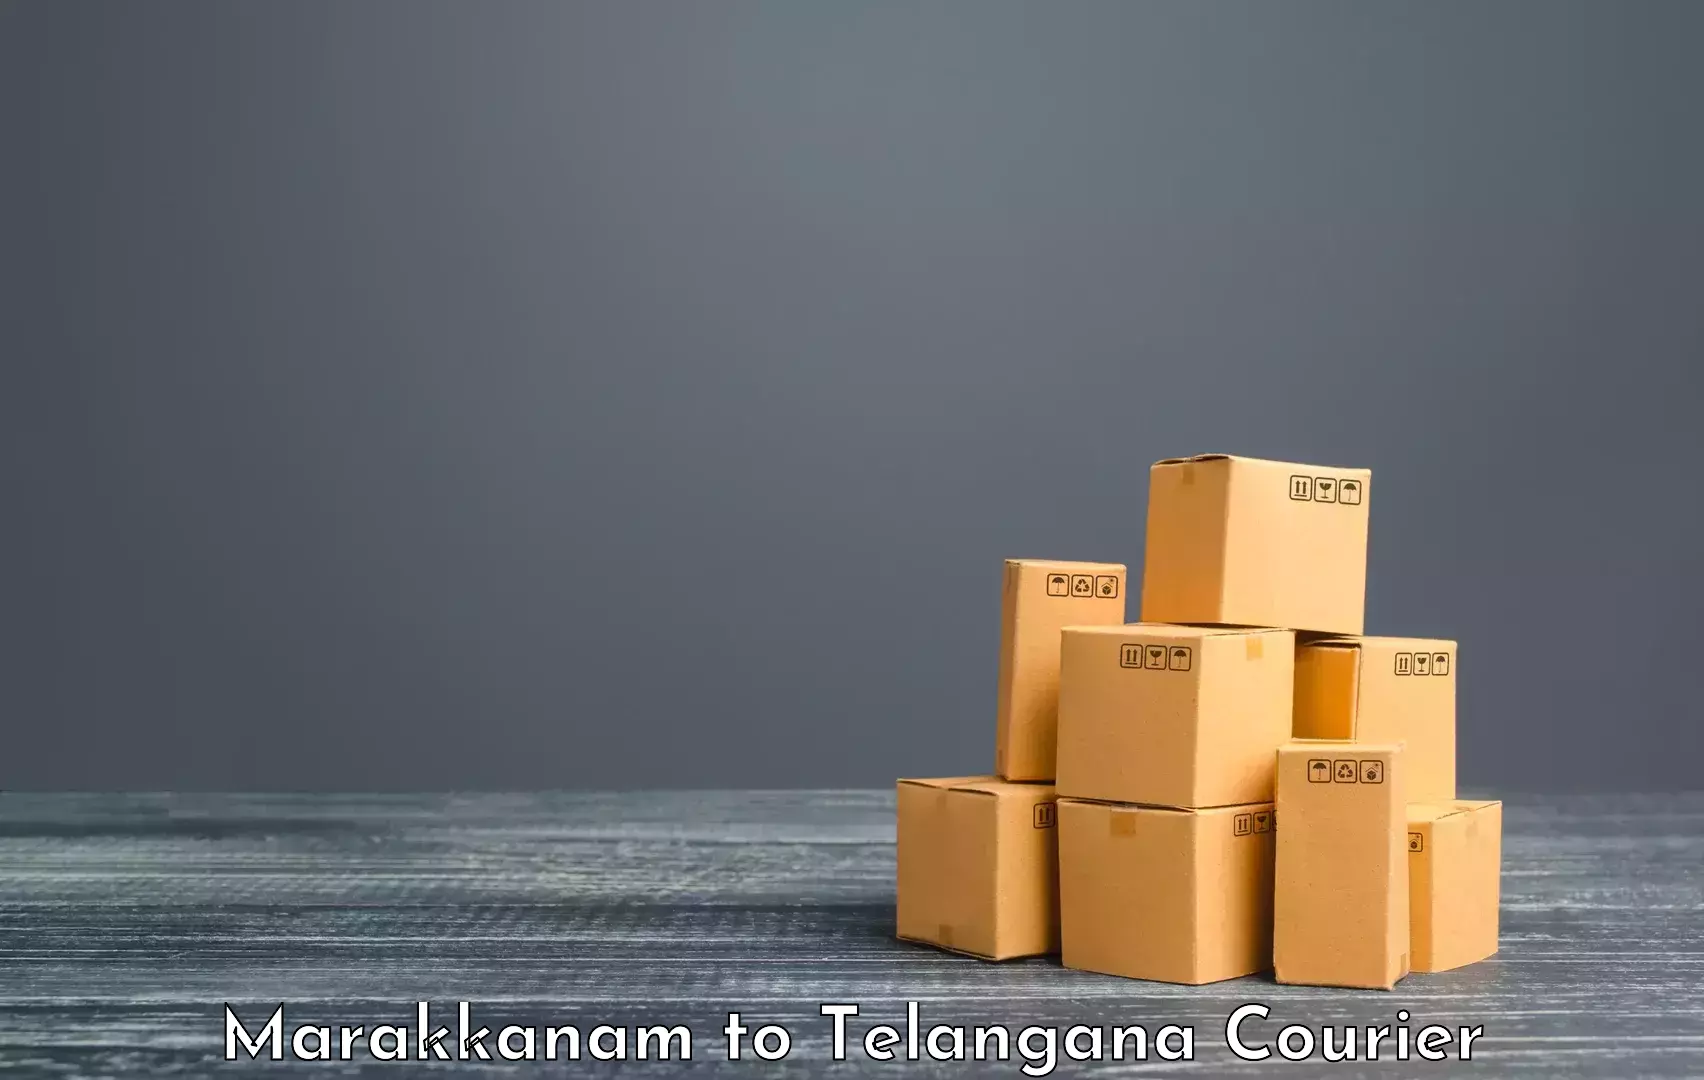 Automated luggage transport Marakkanam to Telangana